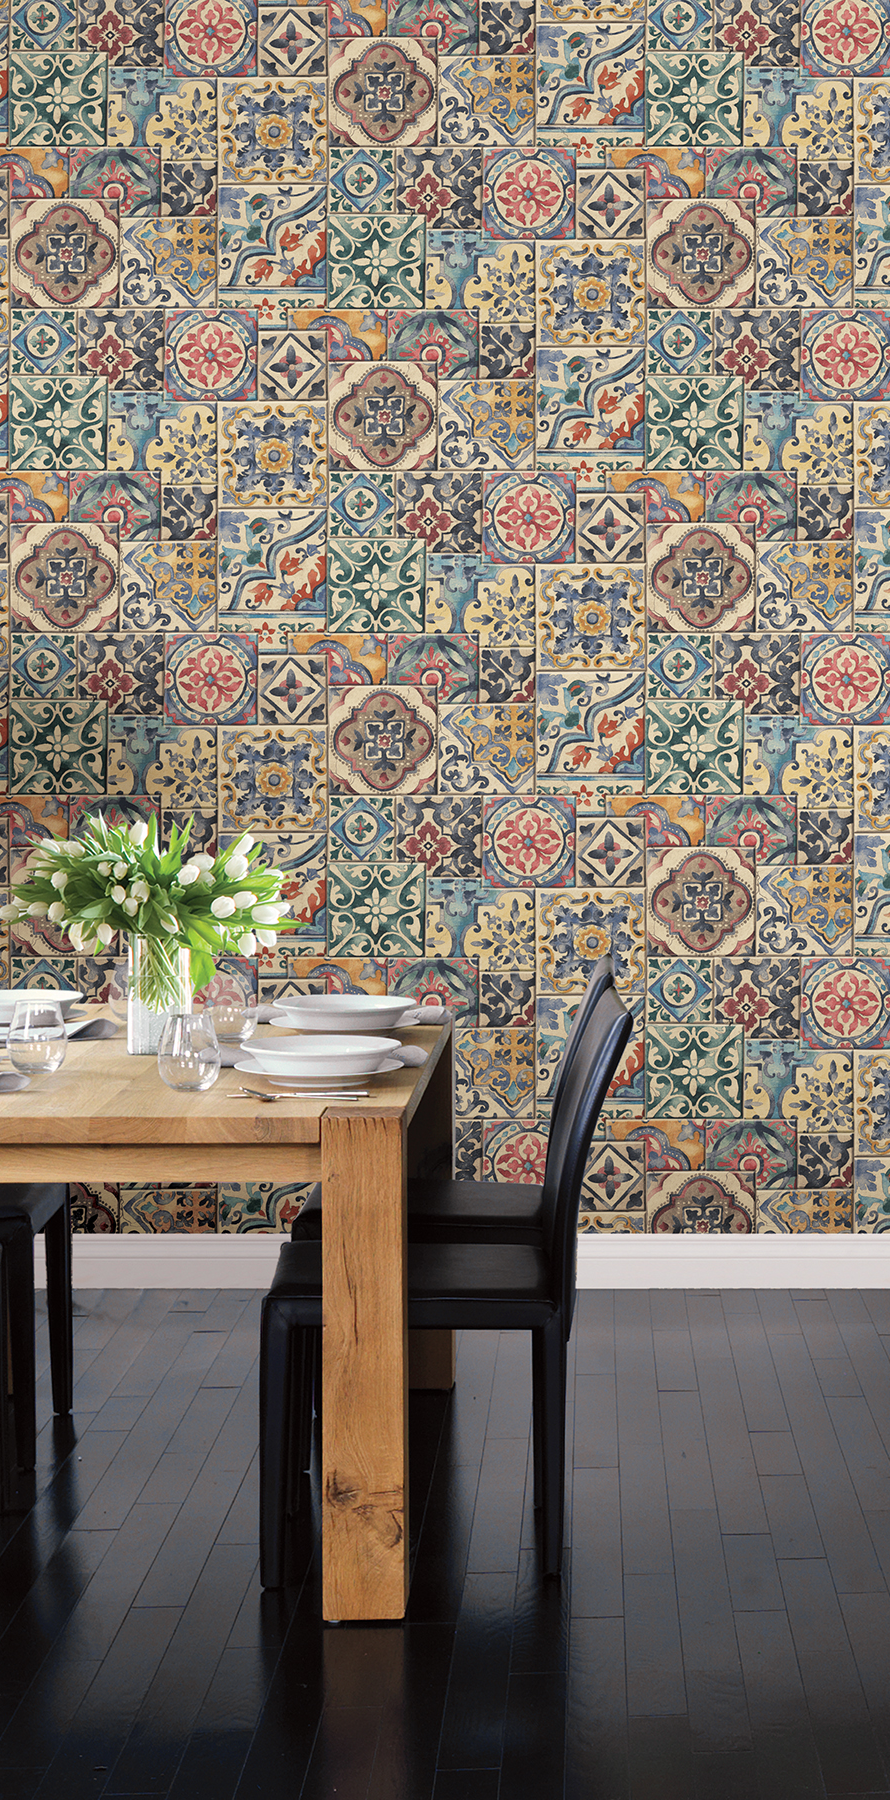 Home Depot Mosaic Tile Marrakech - HD Wallpaper 